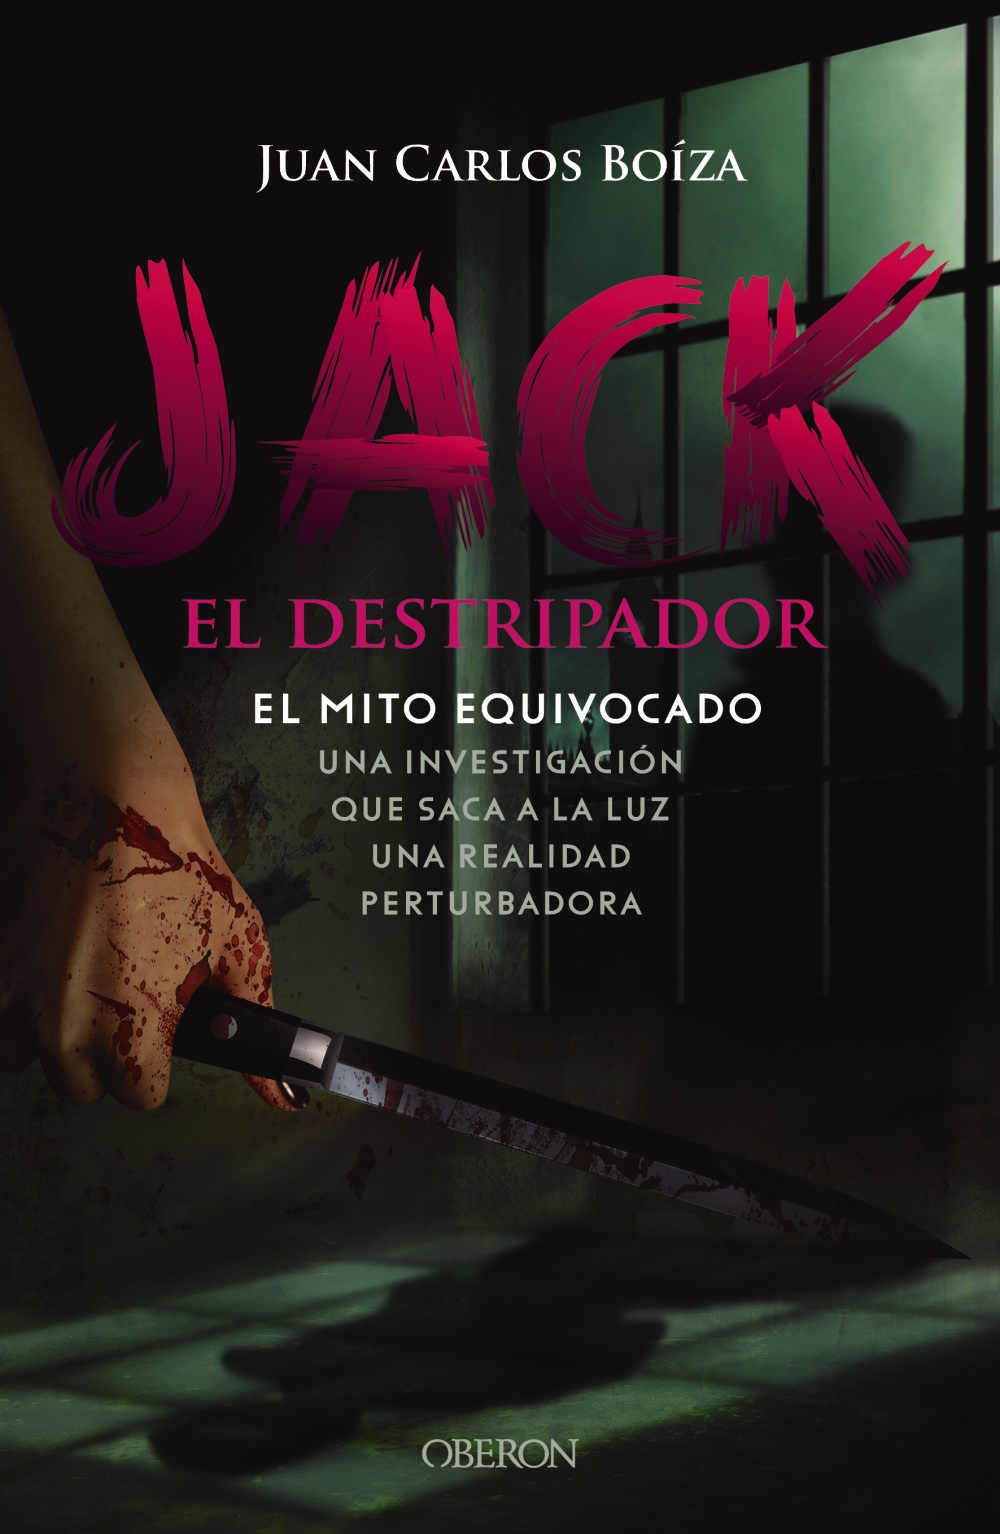 Jack El Destripador El Mito Equivocado 978 84 415 4510 6 